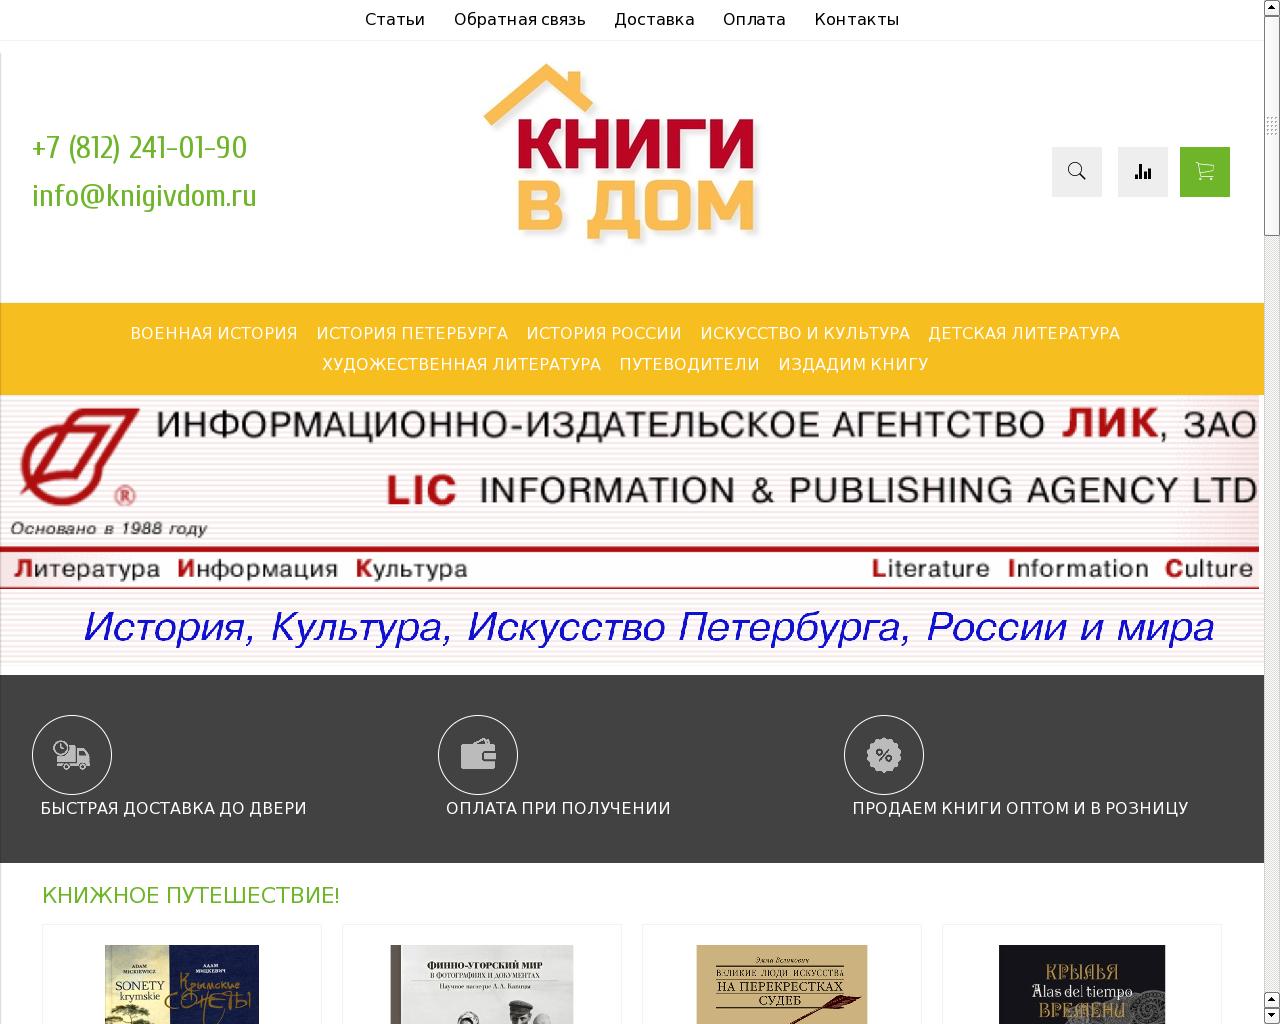 Изображение сайта knigivdom.ru в разрешении 1280x1024